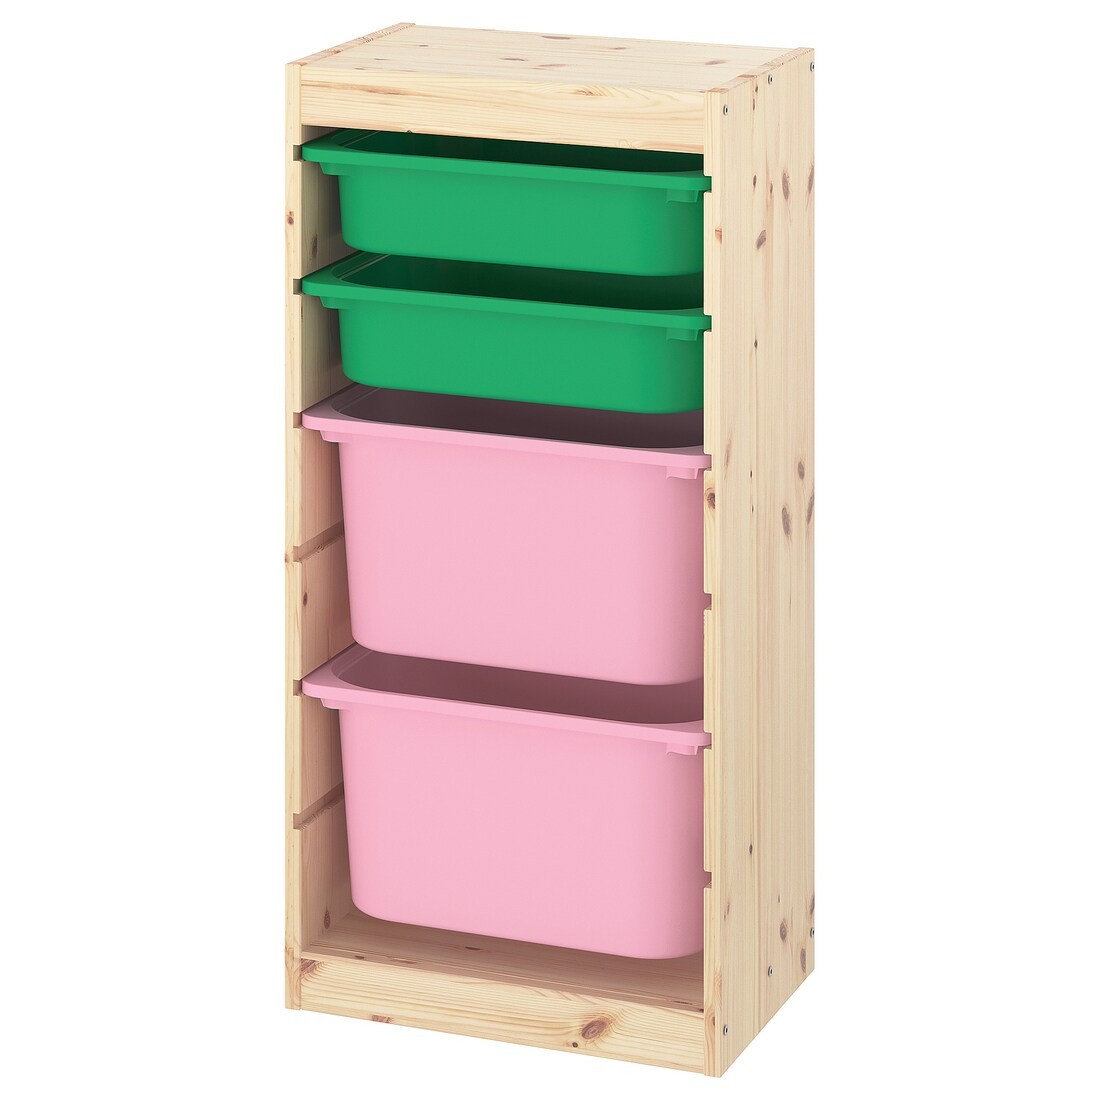 IKEA TROFAST ТРУФАСТ Комбинация для хранения + контейнеры, светлая беленая сосна зеленый / розовый, 44x30x91 см 59338090 593.380.90